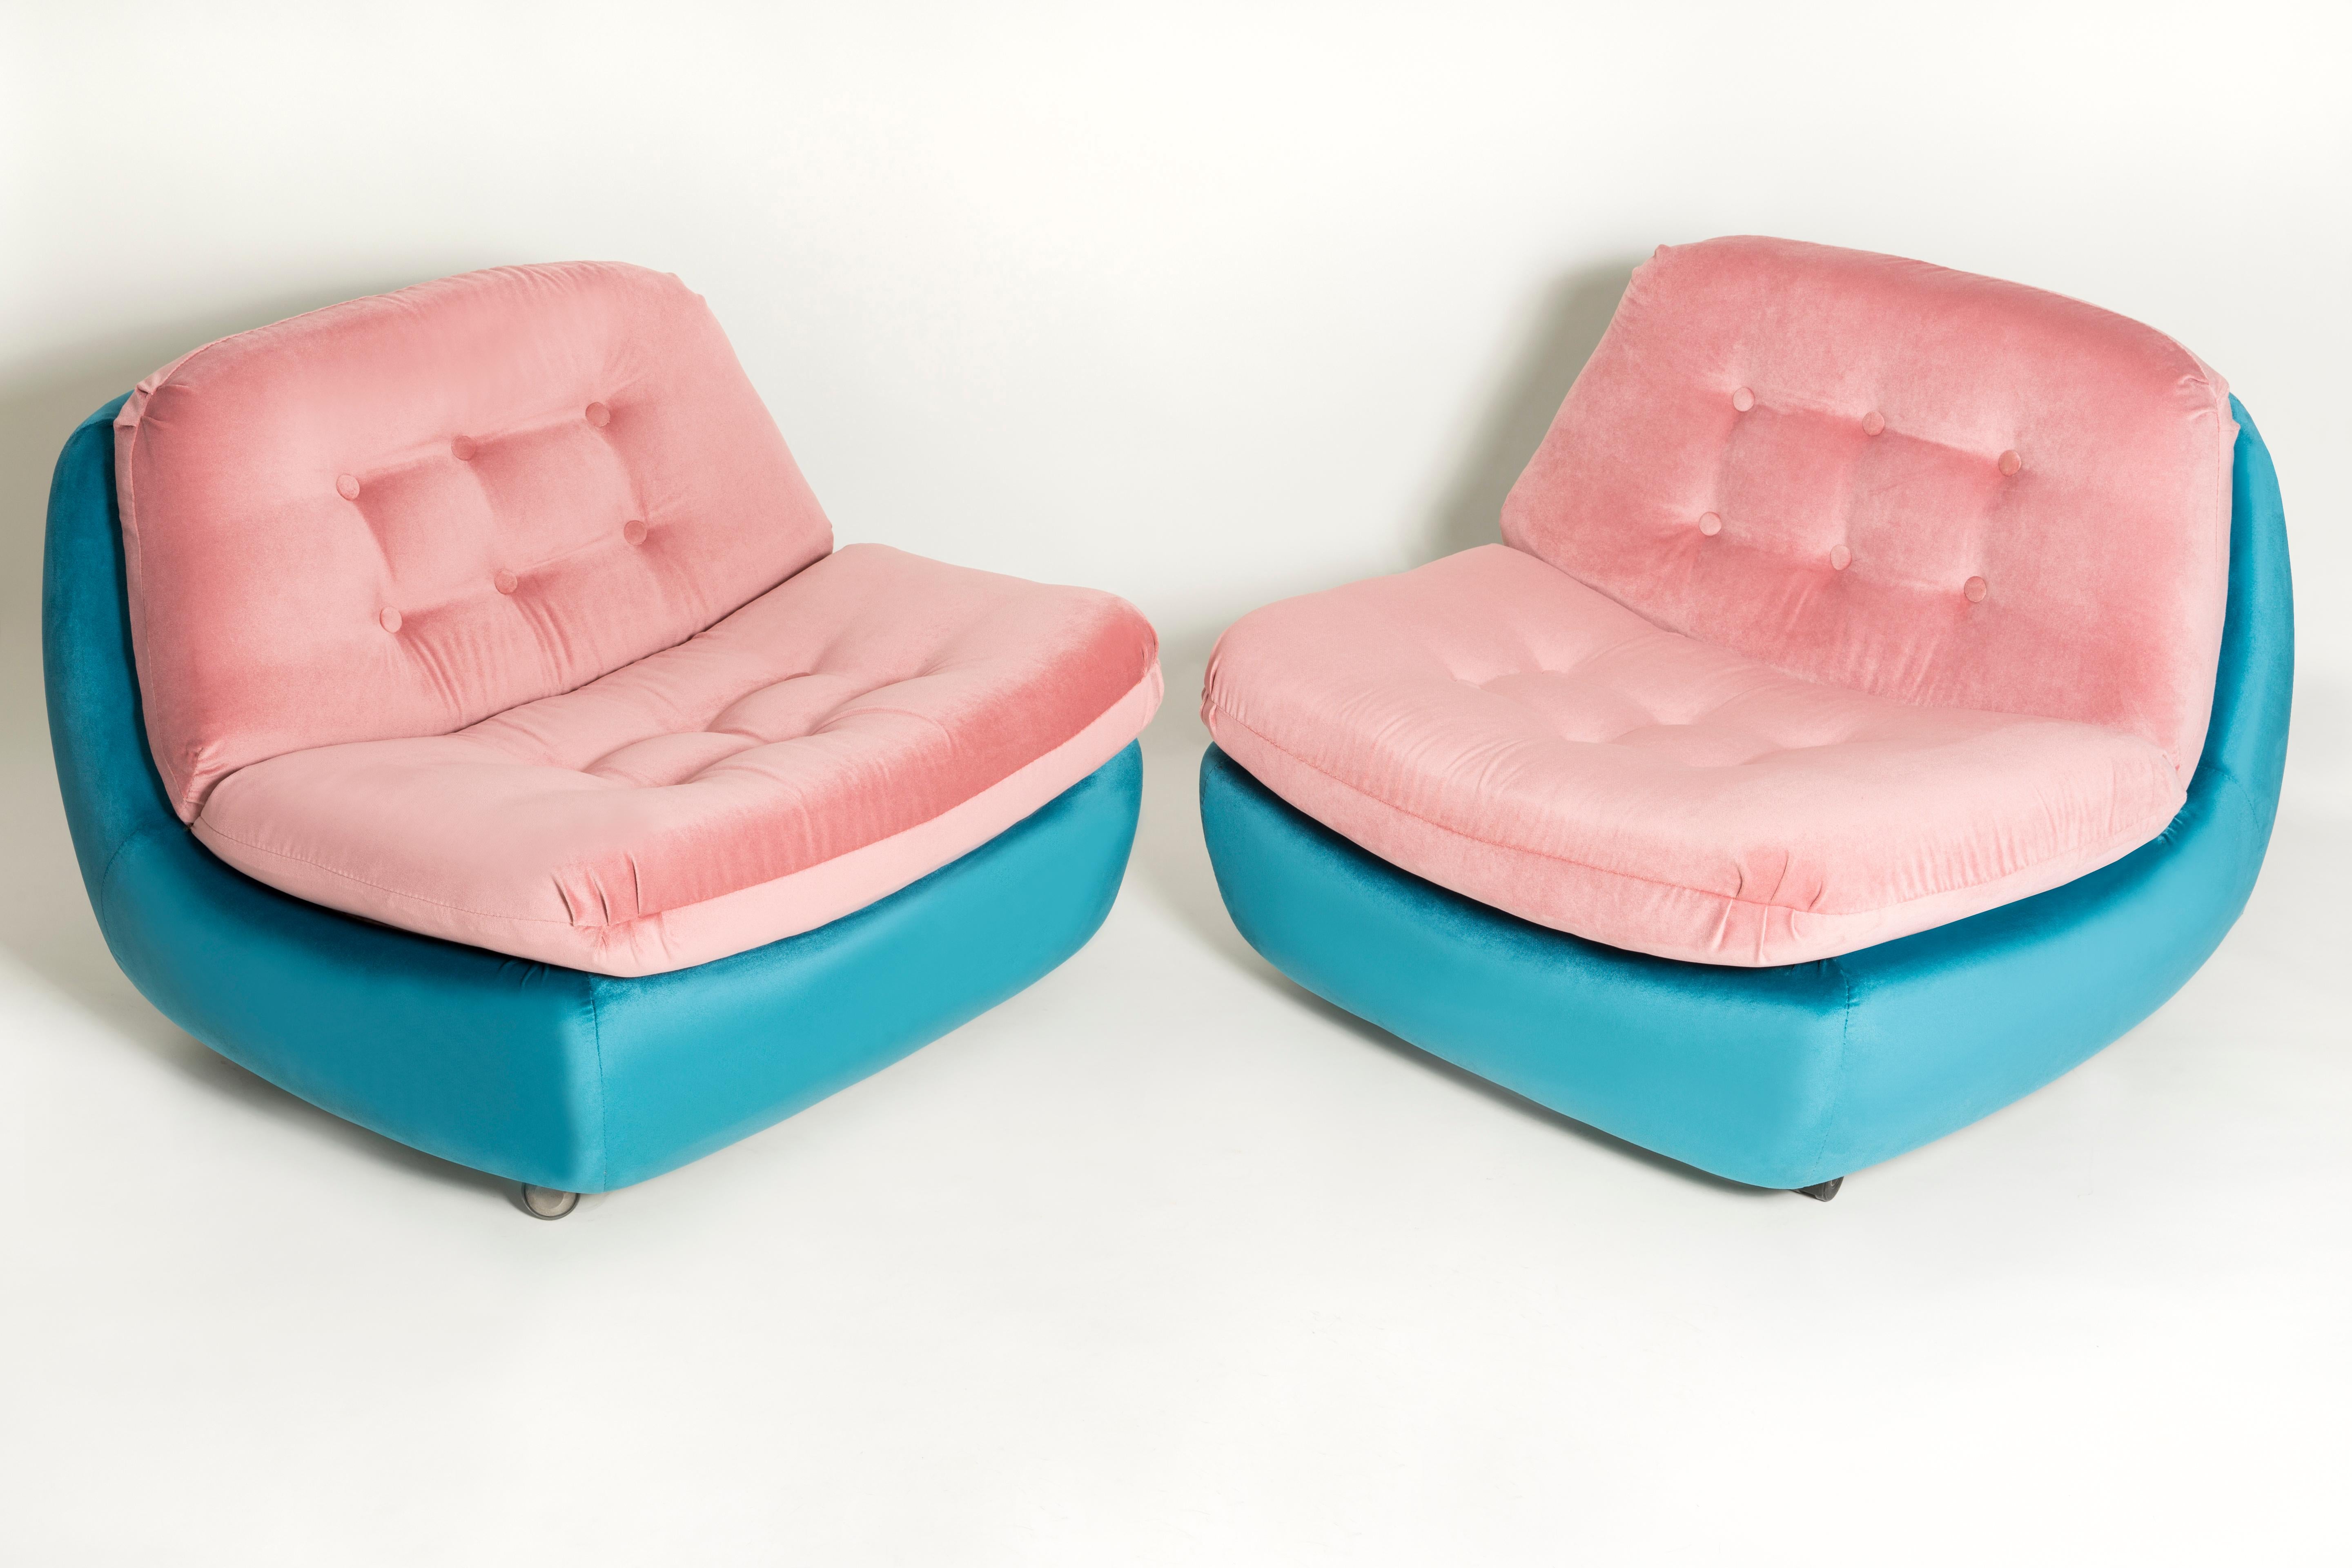 Fauteuil Atlantis des années 1960, produit dans l'usine de meubles silésienne de Swiebodzin ; à l'heure actuelle, ils sont uniques. Grâce à leurs dimensions, ils s'intègrent parfaitement, même dans les petits appartements, offrant confort et belle